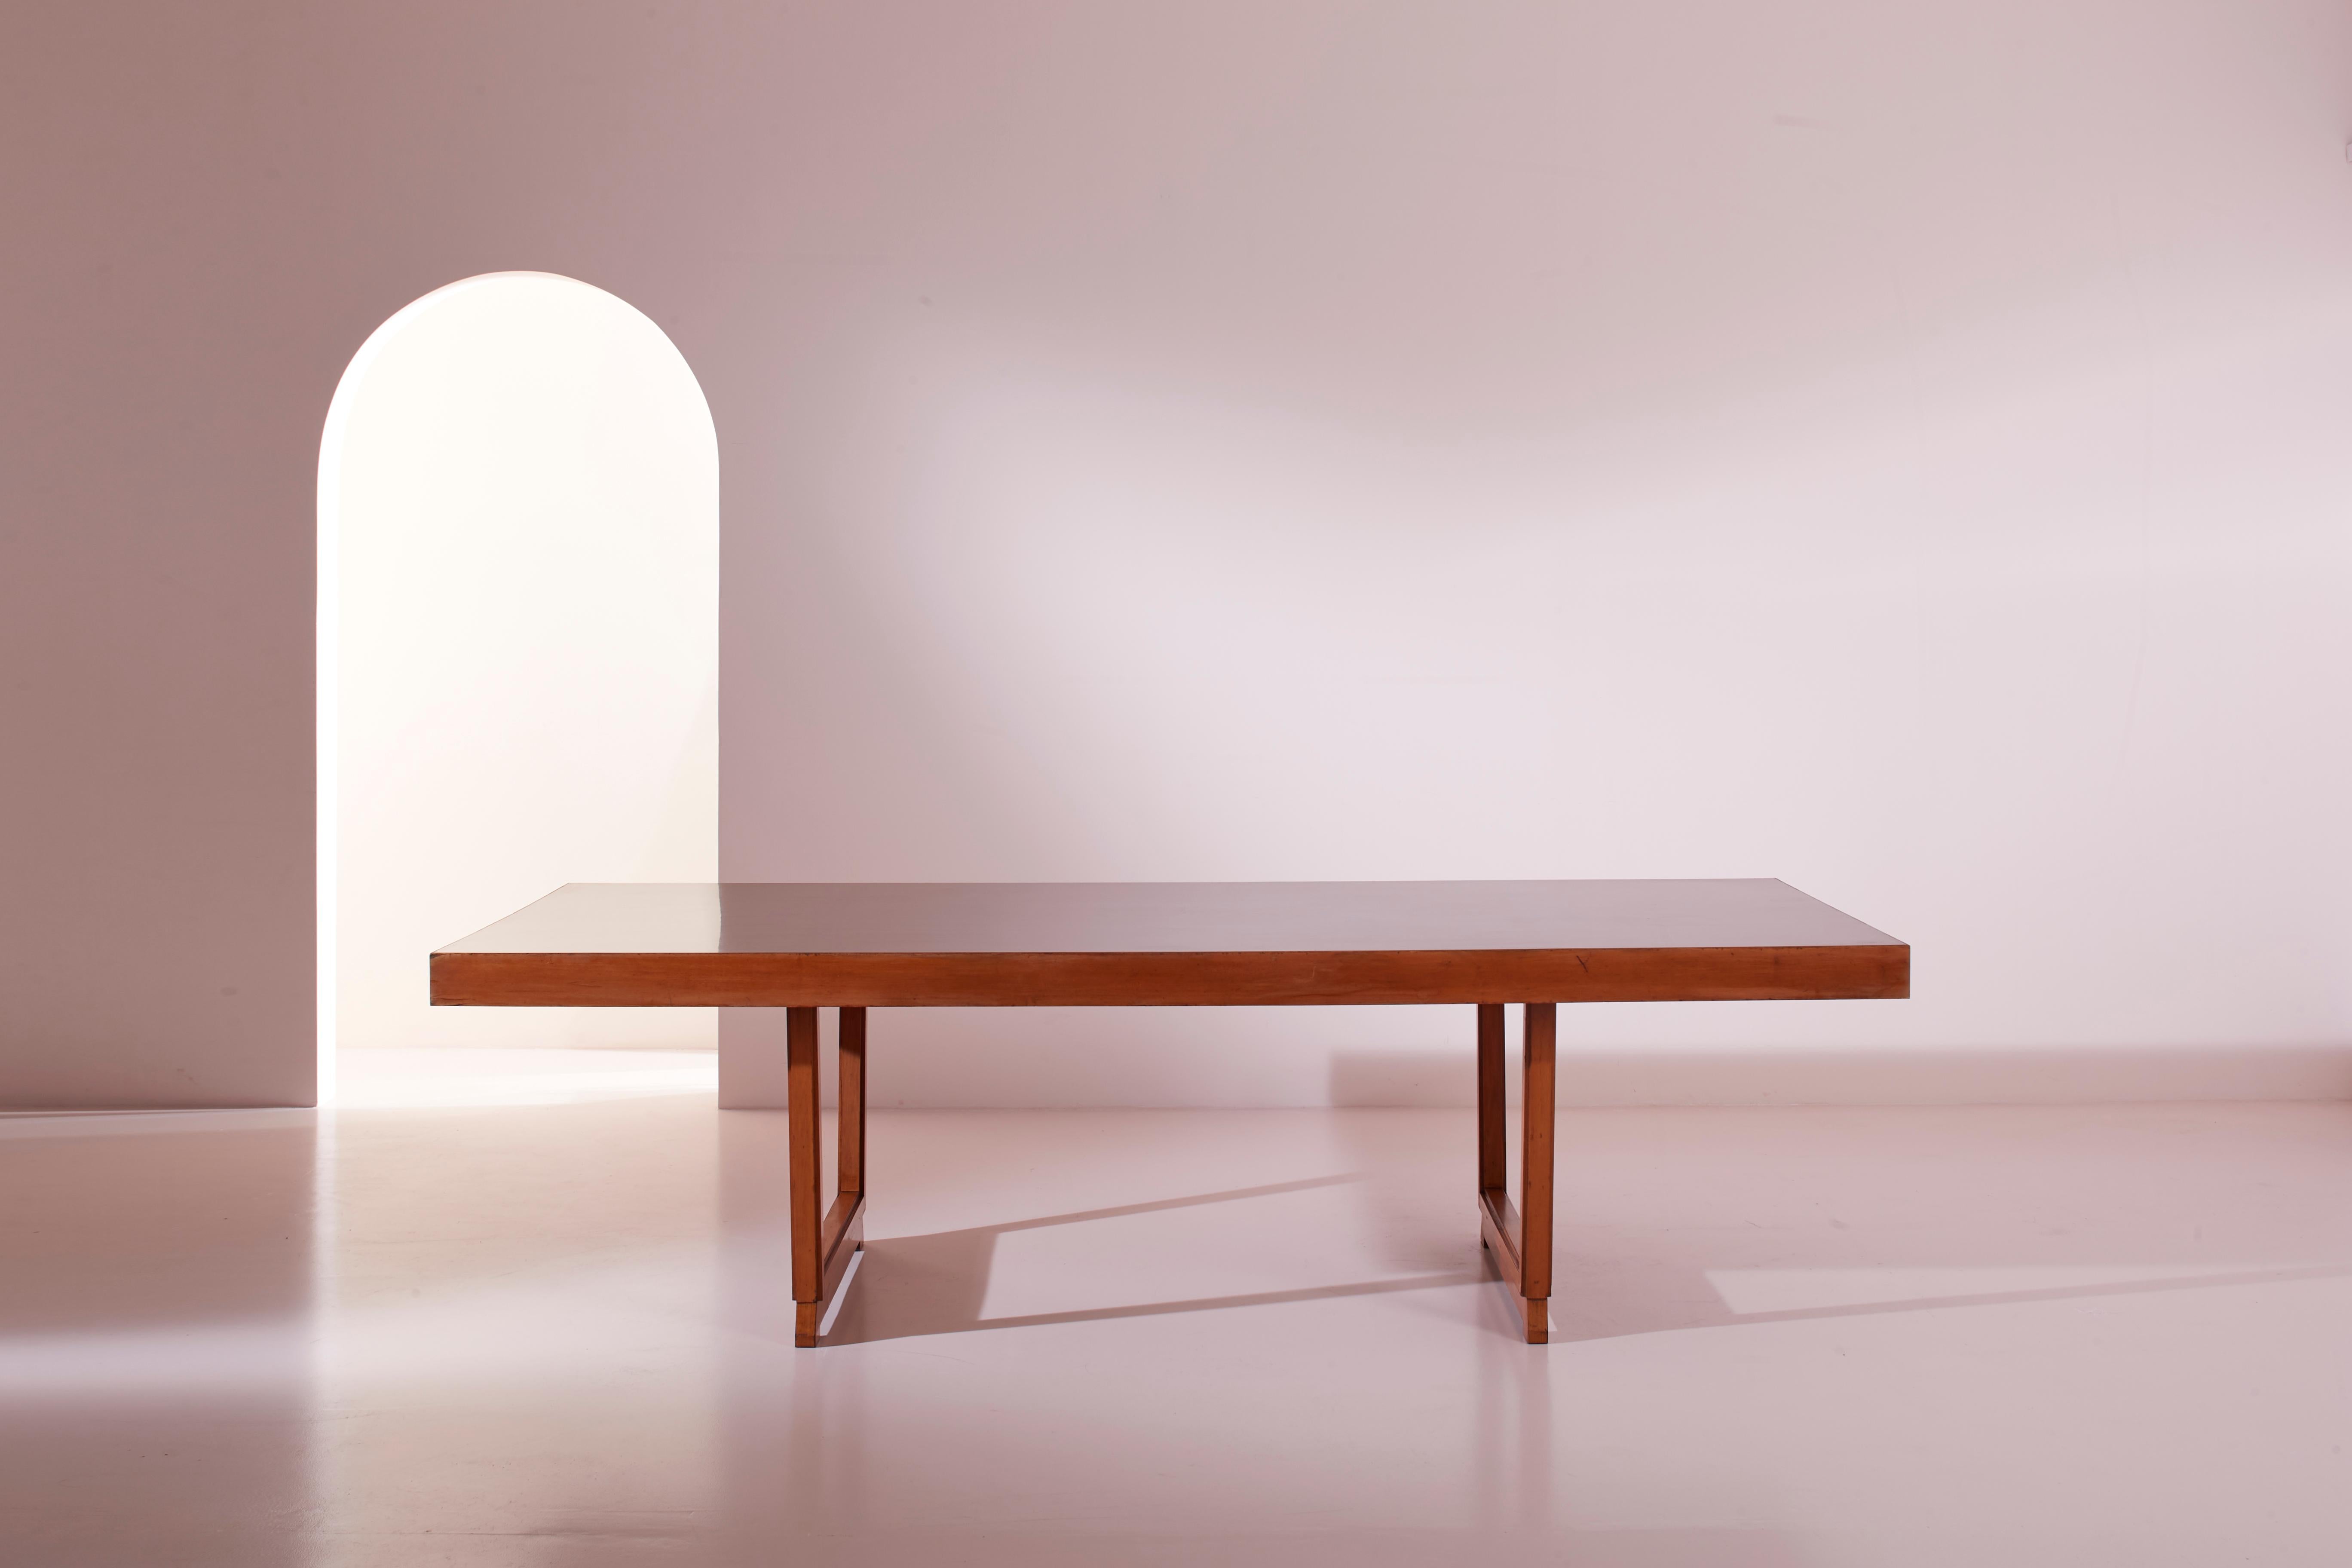 Une grande table, produite en Italie dans les années 60, fabriquée en bois et en Formica, est parfaite pour meubler une salle de conférence, une salle à manger spacieuse ou tout autre lieu où la convivialité nécessite un grand espace pour accueillir